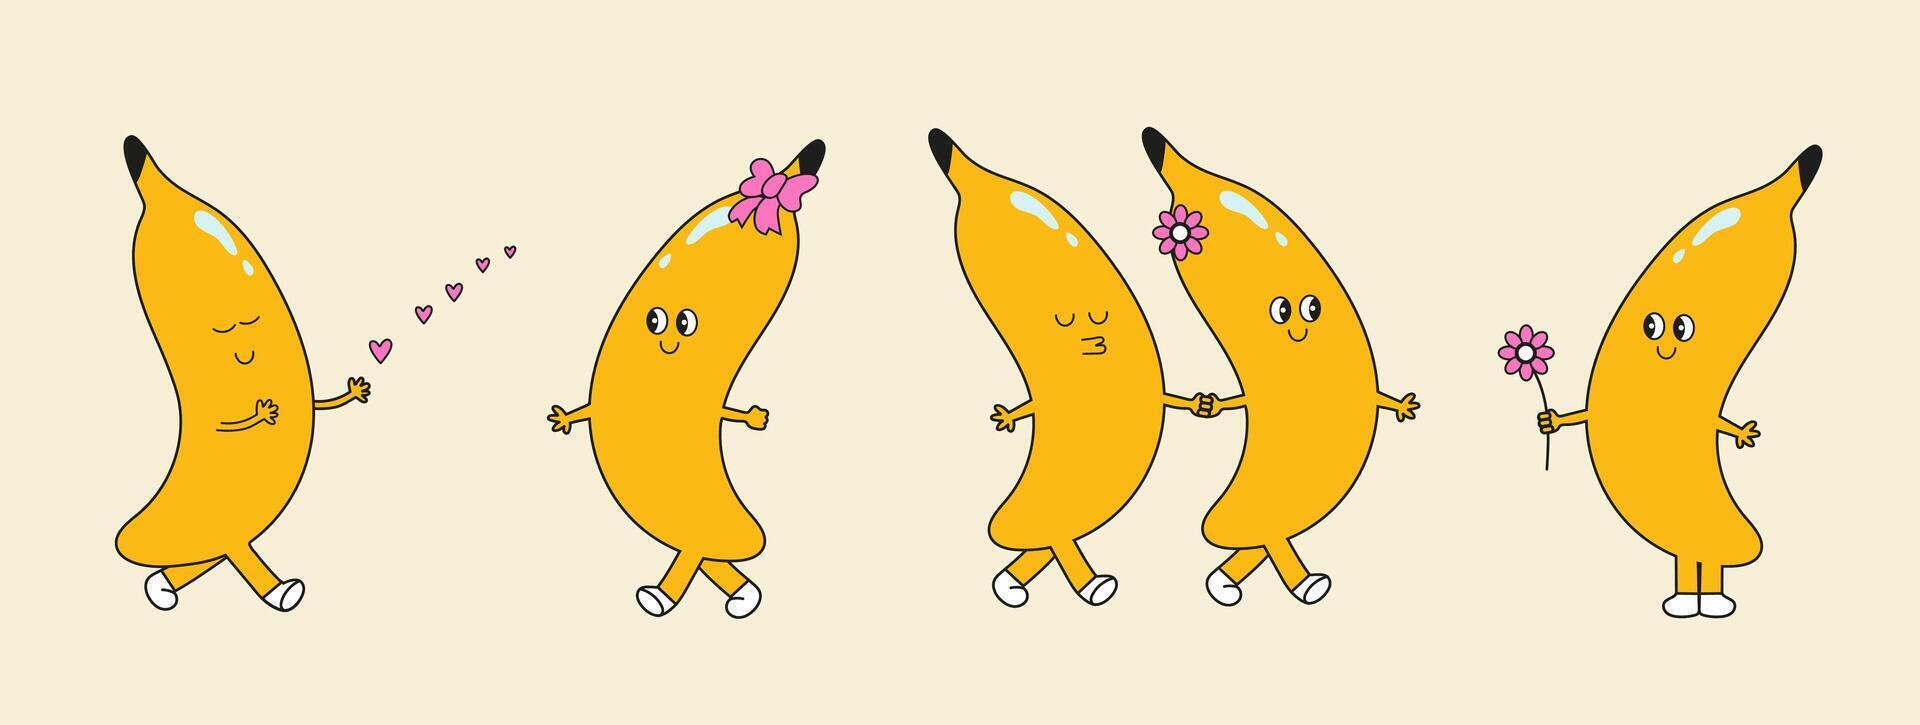 Groovy Banana impostare. amore relazione. mano disegnare divertente retrò Vintage ▾ di moda stile Banana cartone animato carattere. scarabocchio comico collezione. vettore